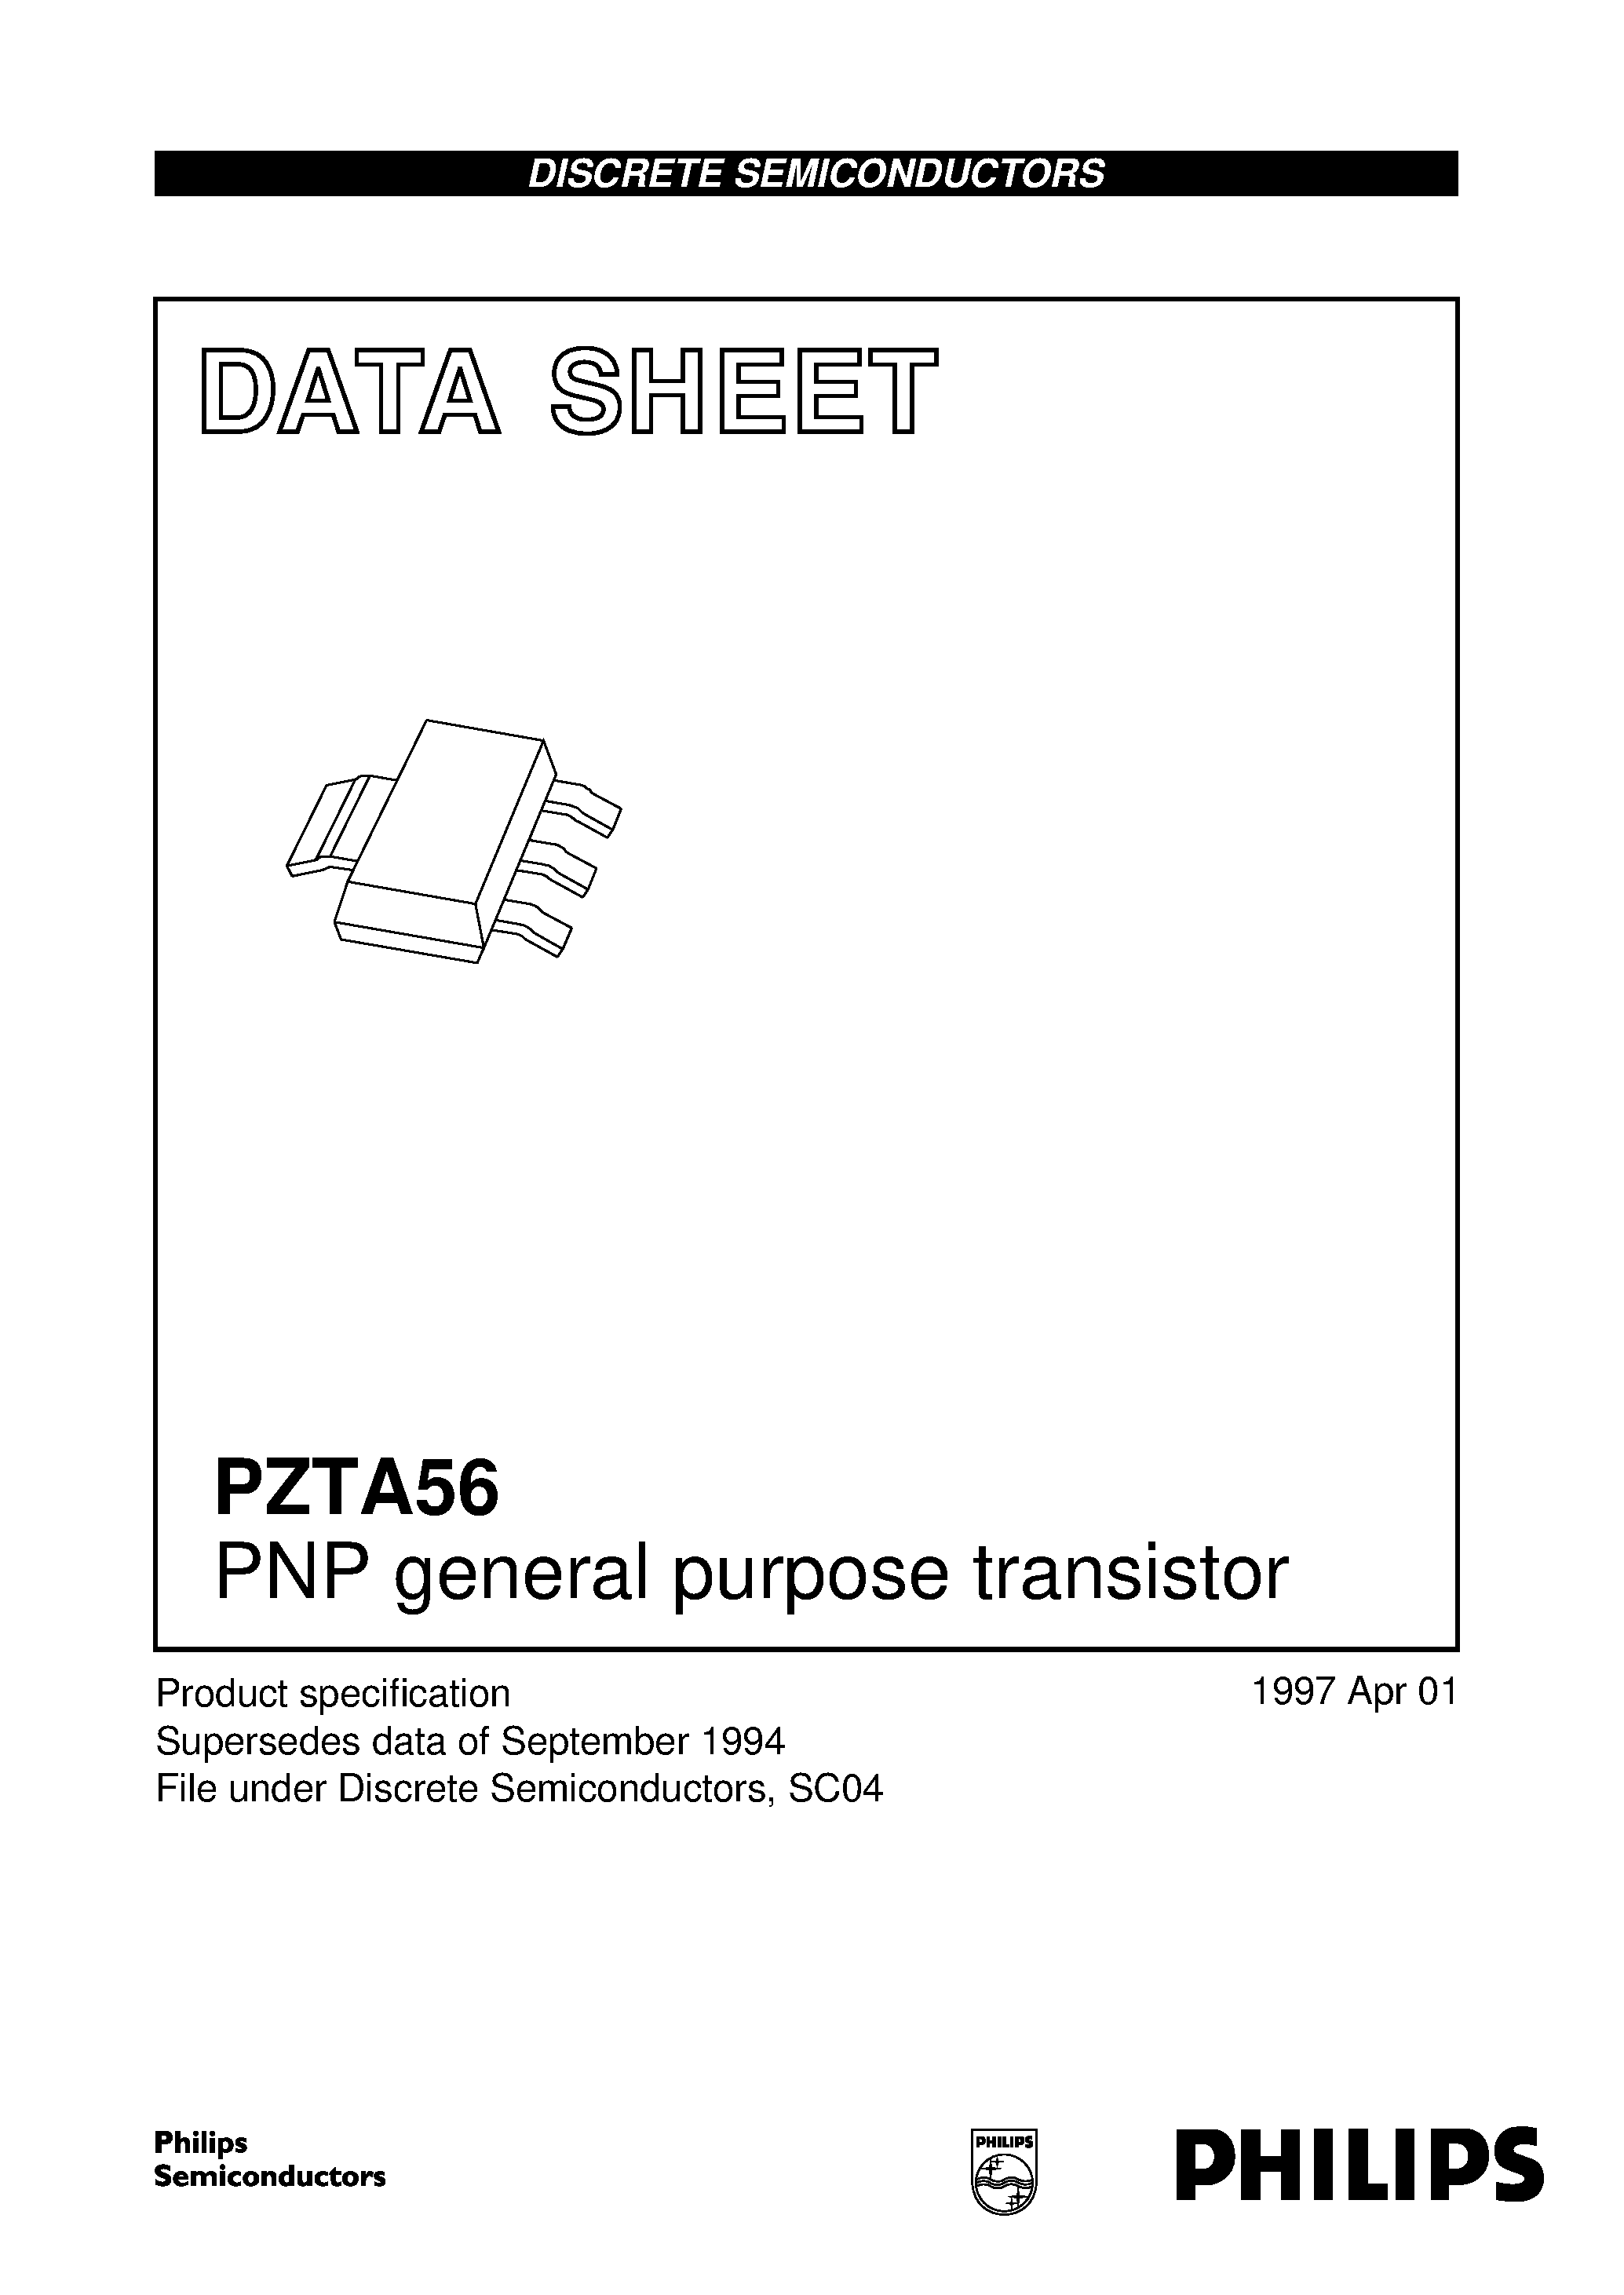 Datasheet PZTA56 - PNP general purpose transistor page 1